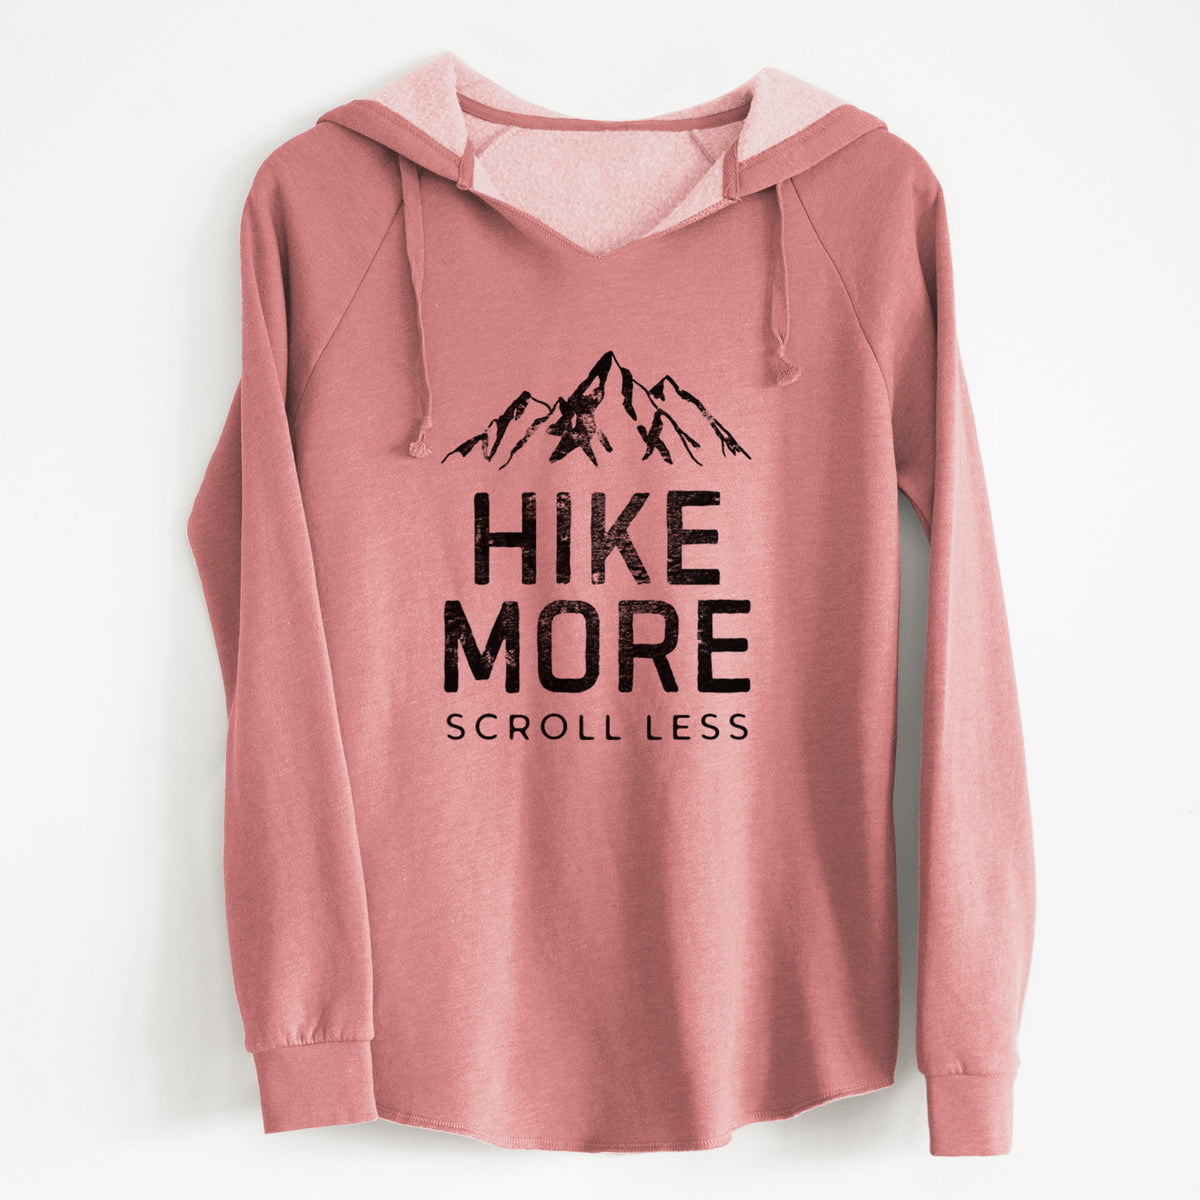 Hike More - Scroll Less - Cali Wave Hooded Sweatshirt